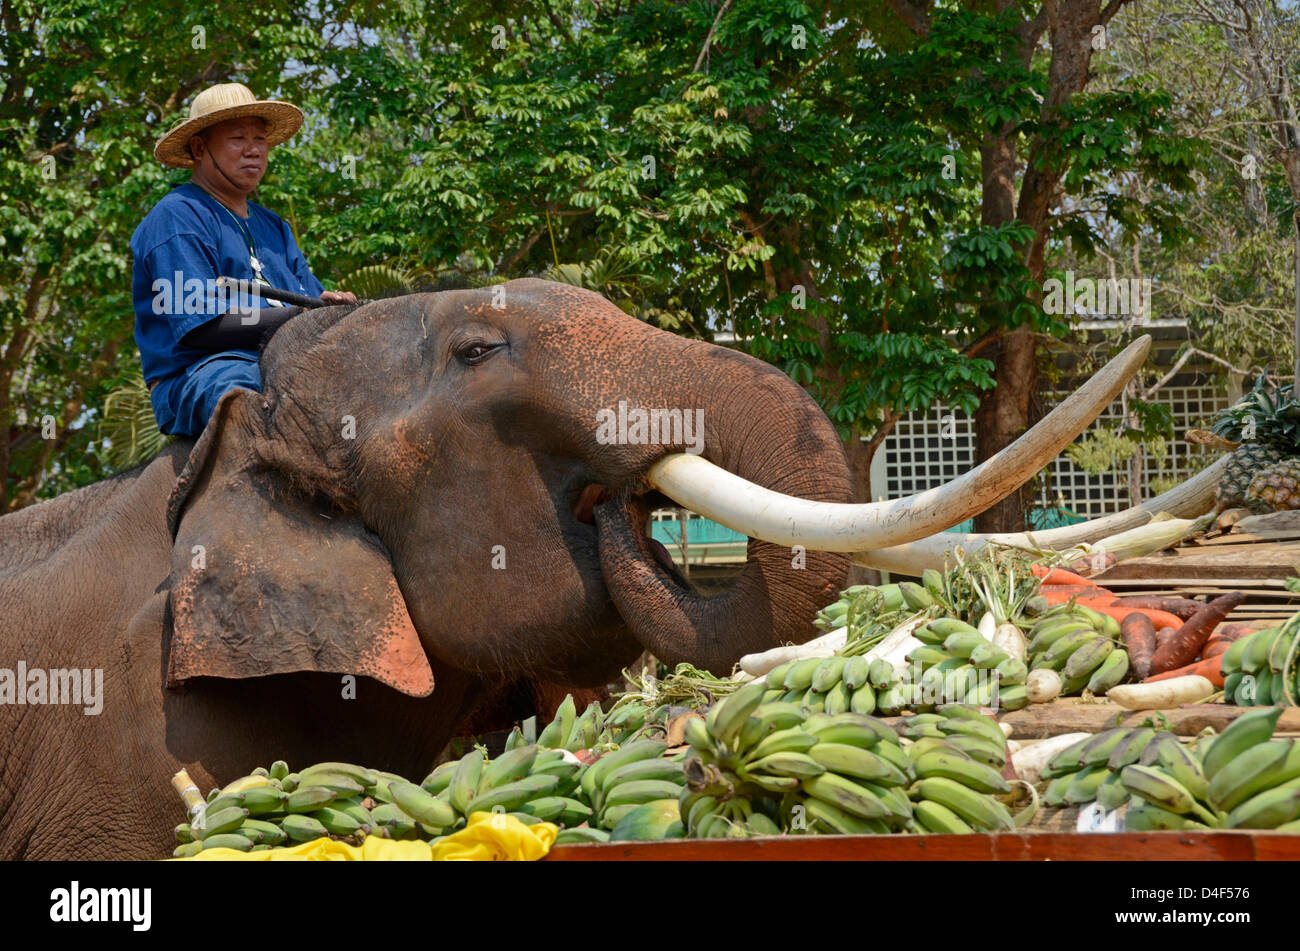 Un elefante asiático de Bull se alimenta de frutas y verduras en el Centro de Conservación del Elefante Tailandés,Lampang Foto de stock